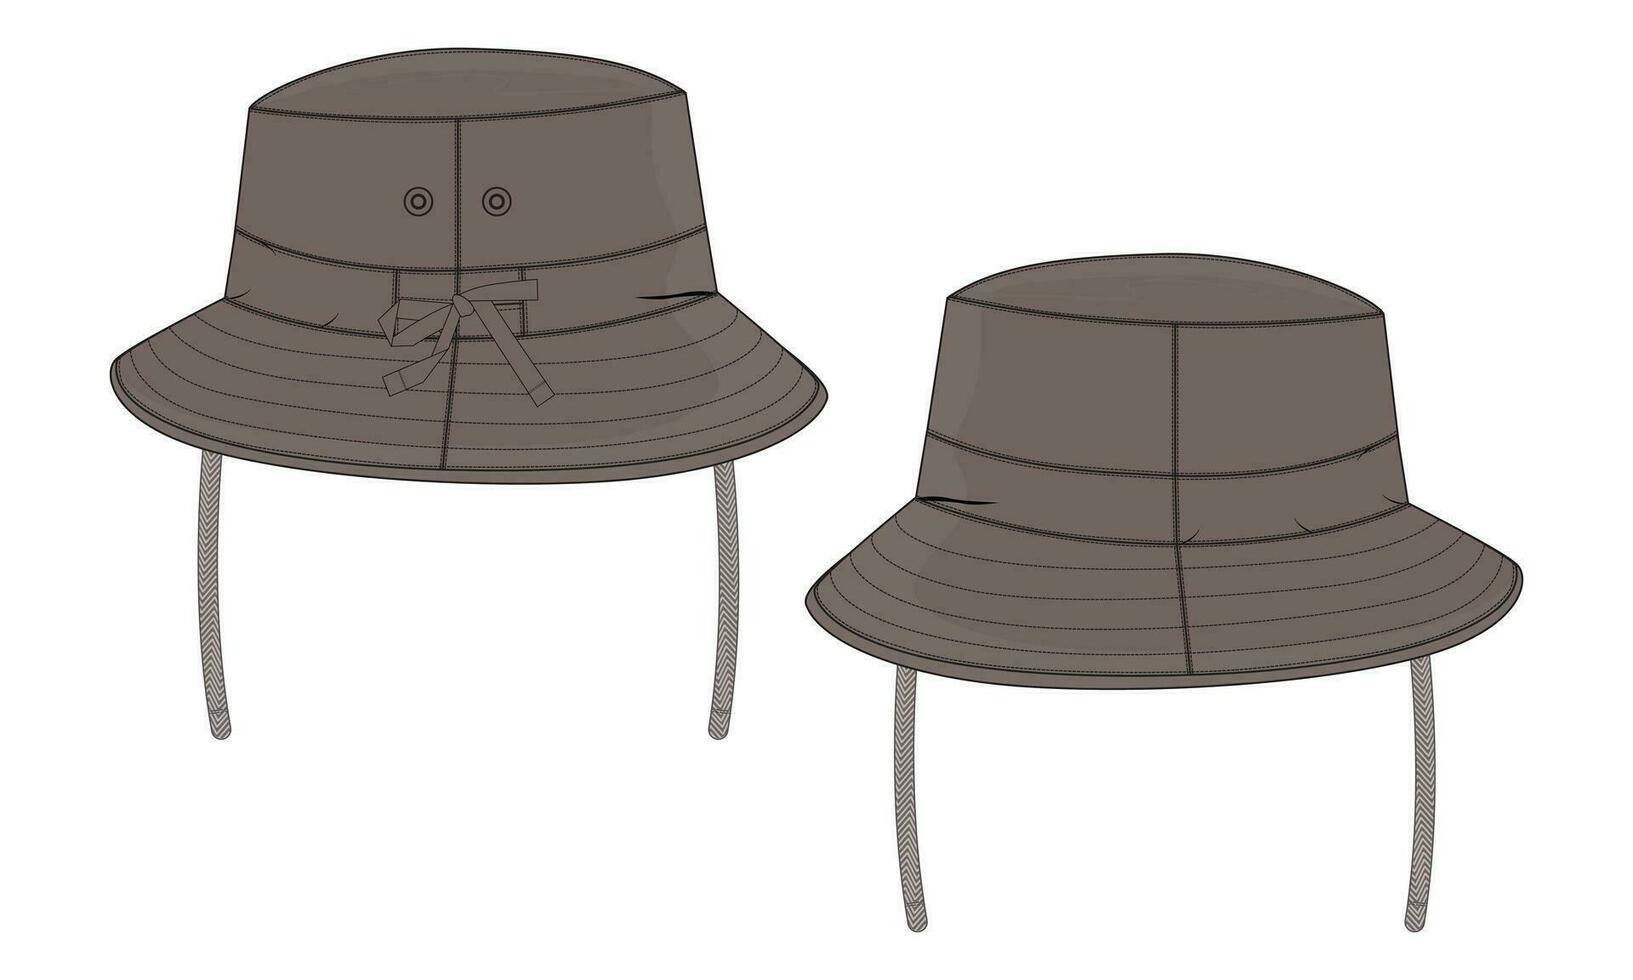 Cubeta sombrero gorra técnico dibujo Moda plano bosquejo vector ilustración modelo frente y espalda puntos de vista